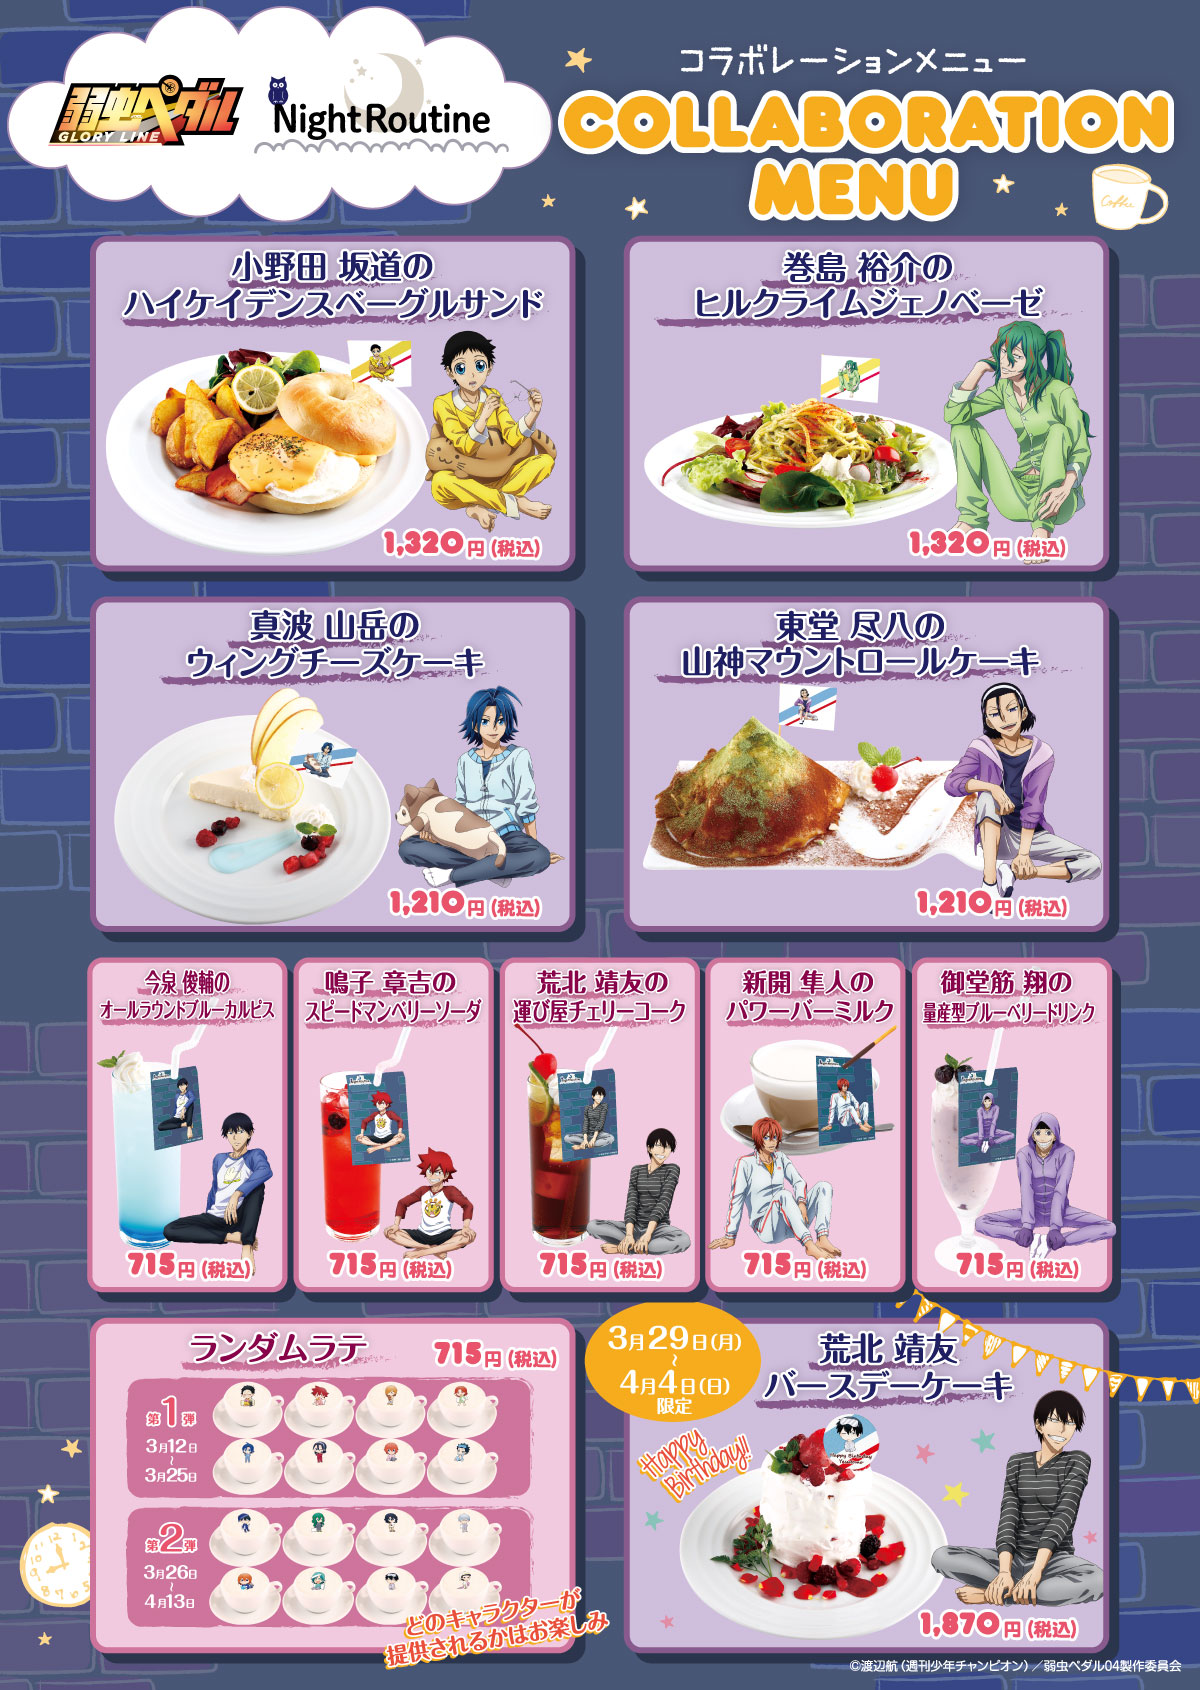 『弱虫ペダル』× Chugai Grace Cafe コラボカフェ開催！(3/12〜4/13) Chugai Grace Cafe(渋谷